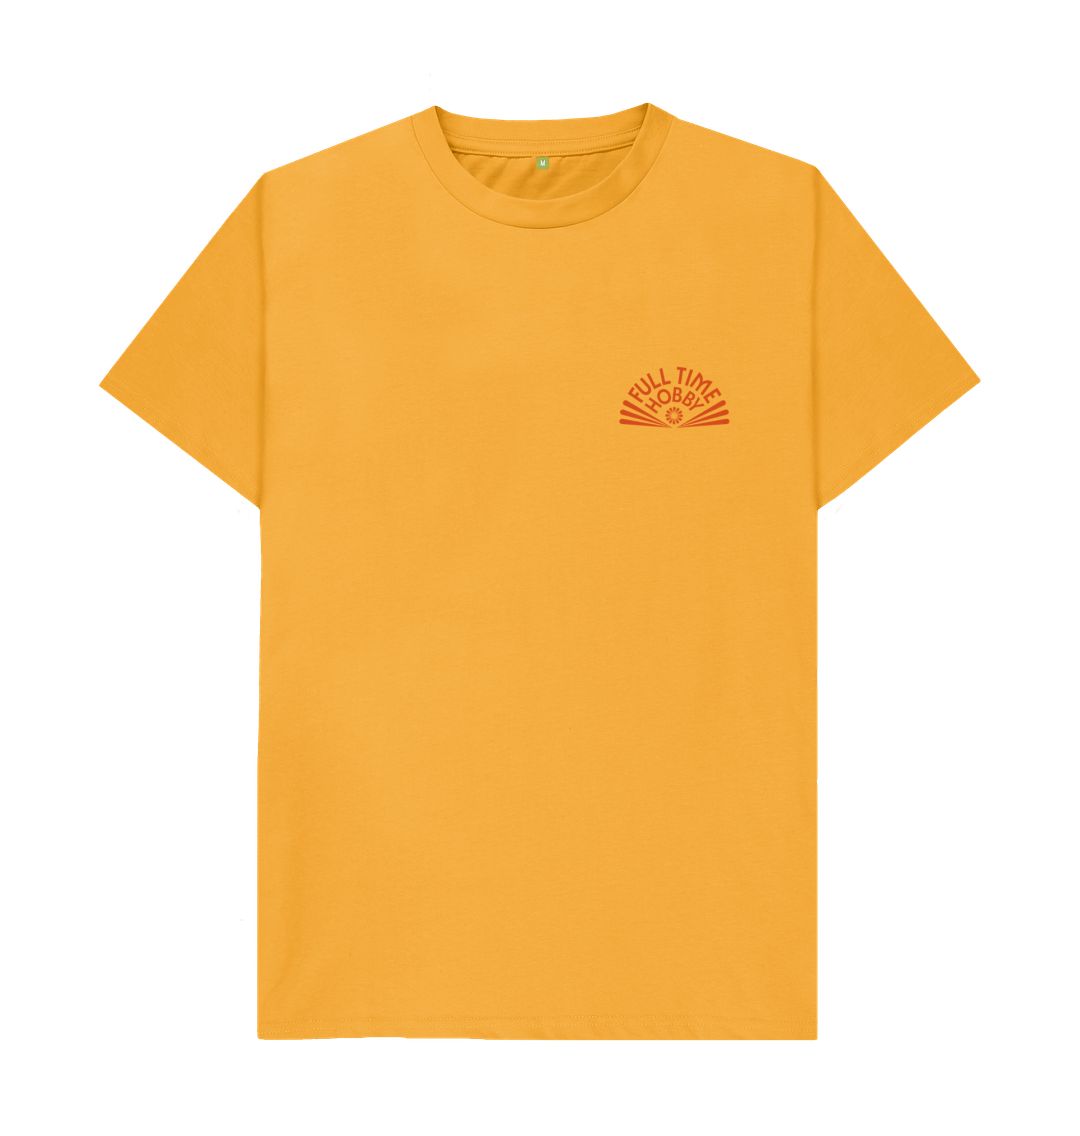 Mustard Full Time Hobby 2024 Shirt